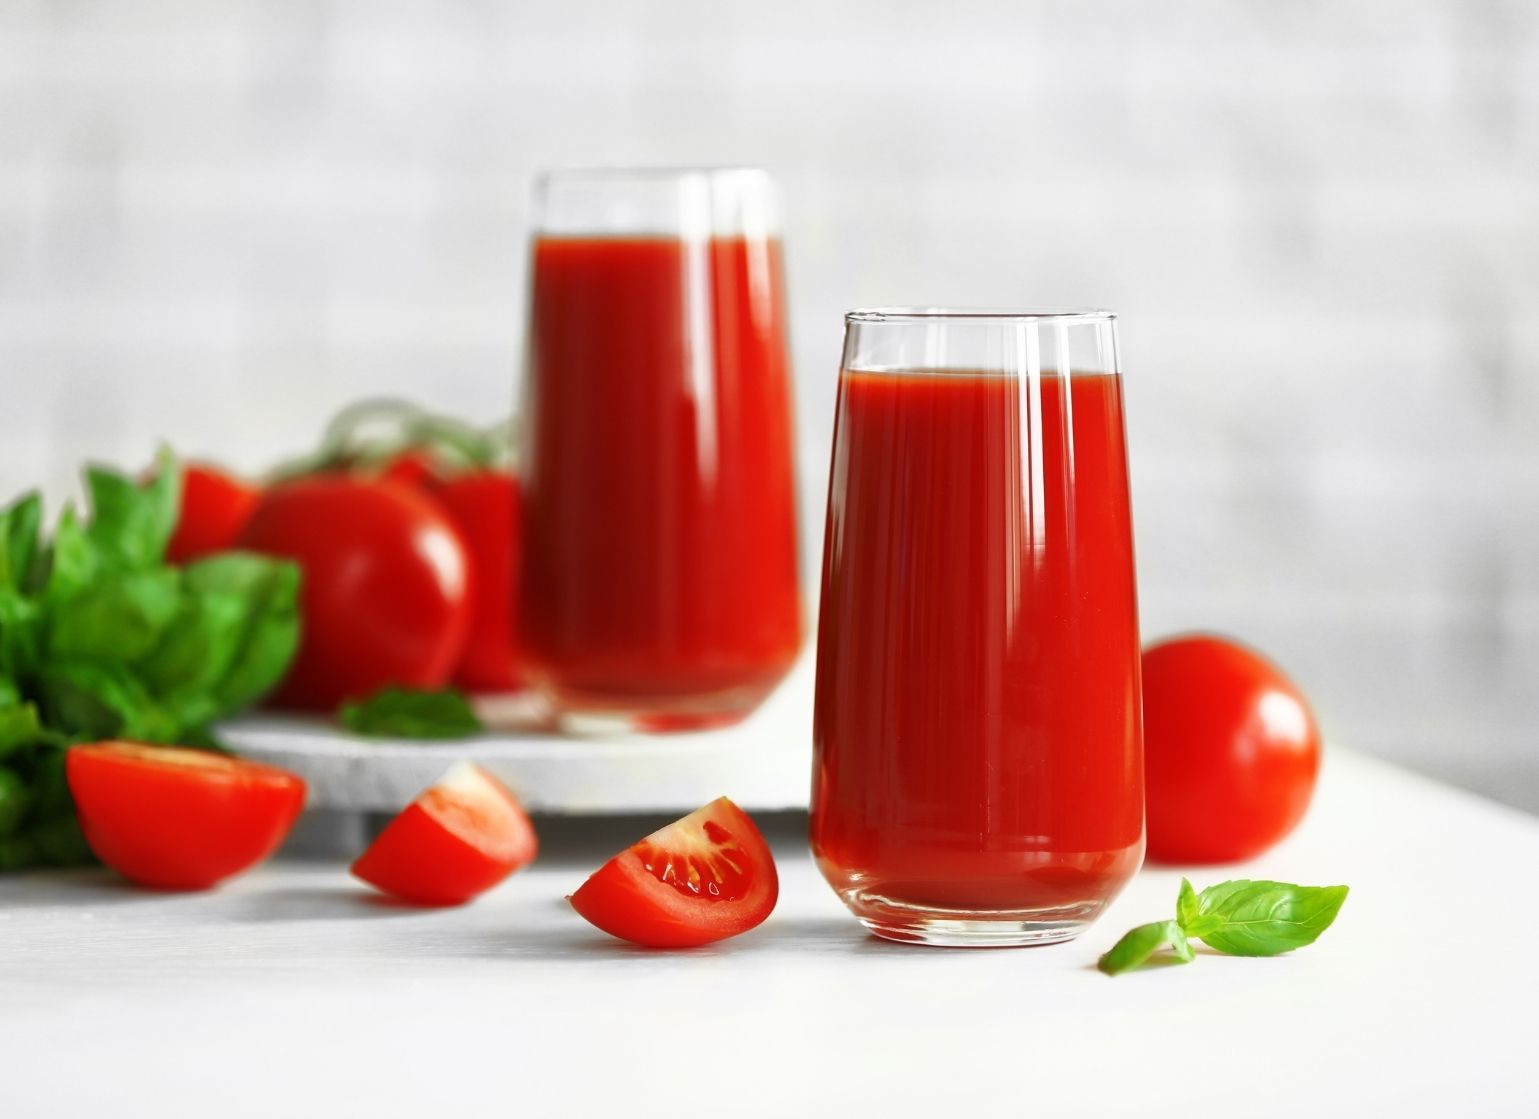 Tomato Soup Benefits